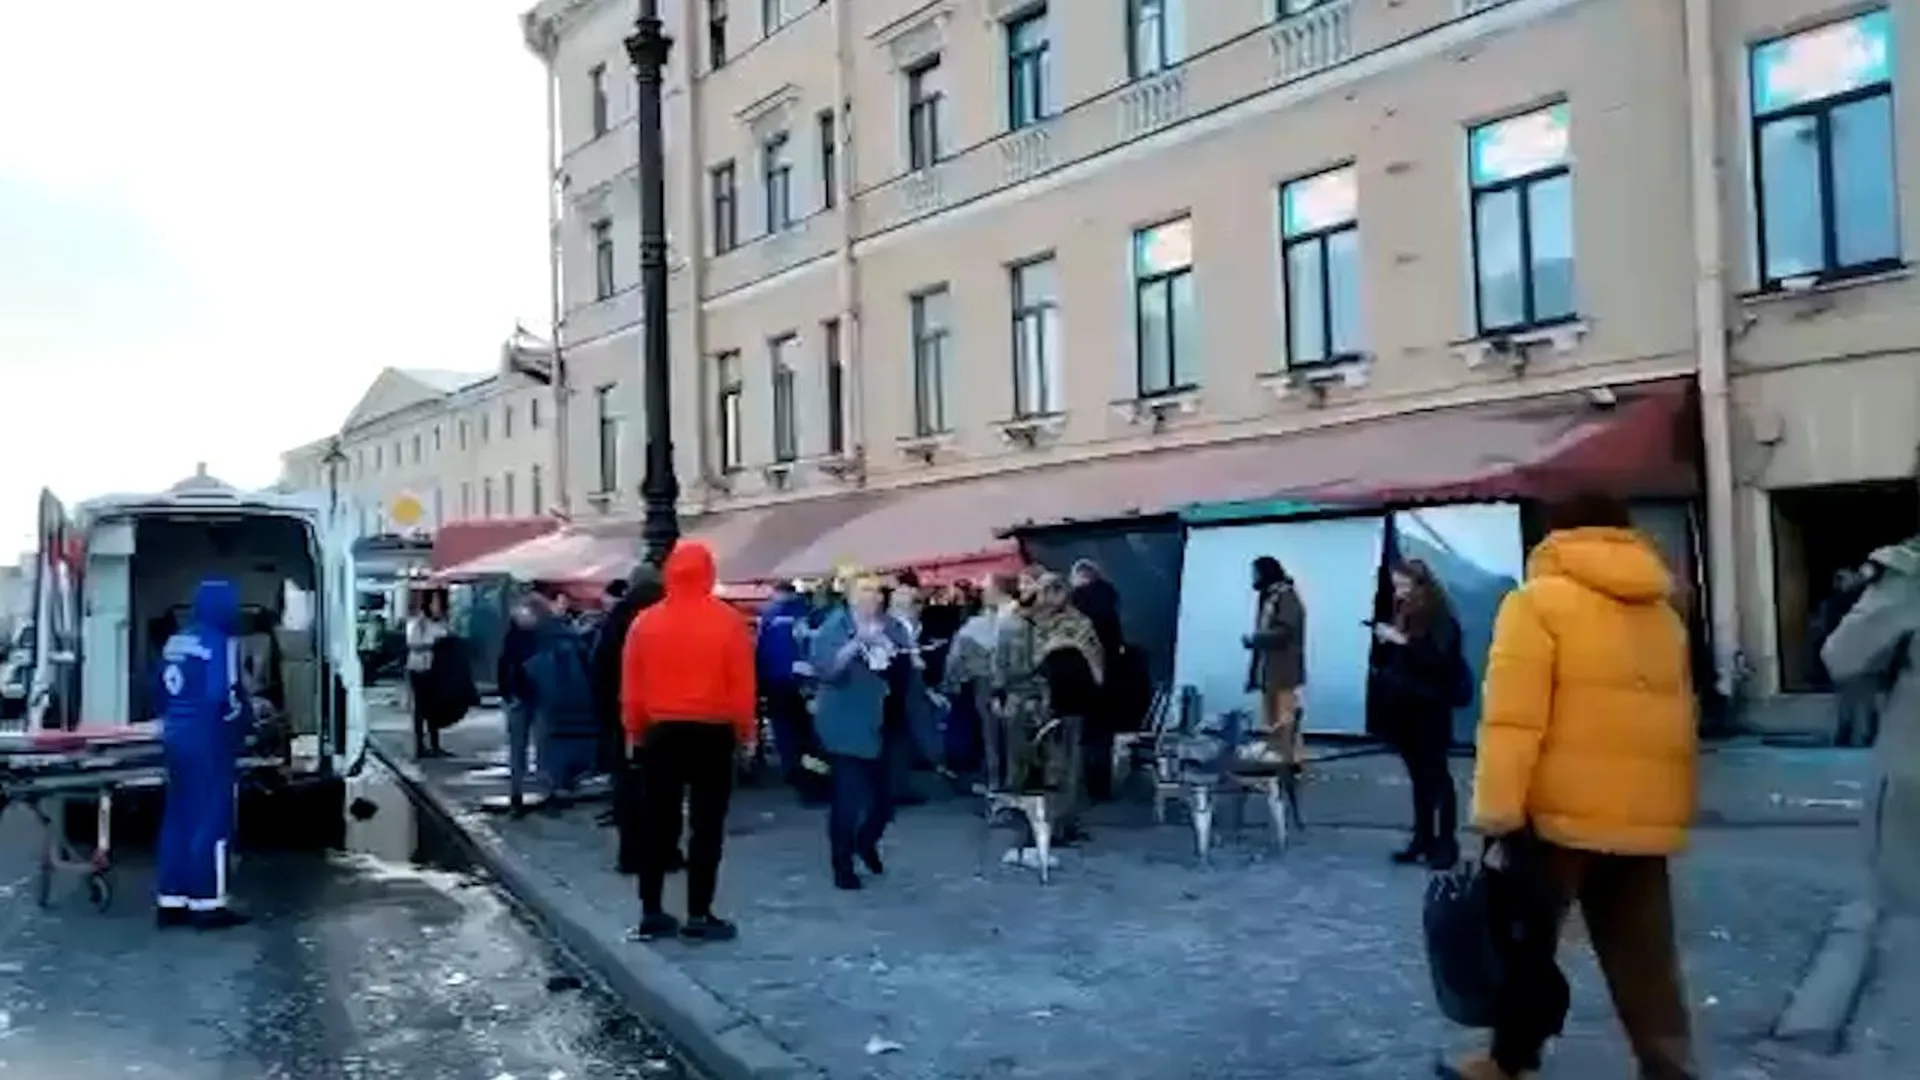 Взорвали кафе в Санкт-Петербурге 2 апреля. В Петербурге взорвали кафе. Взрыв в кафе в Санкт-Петербурге фото. На чьем концерте был теракт